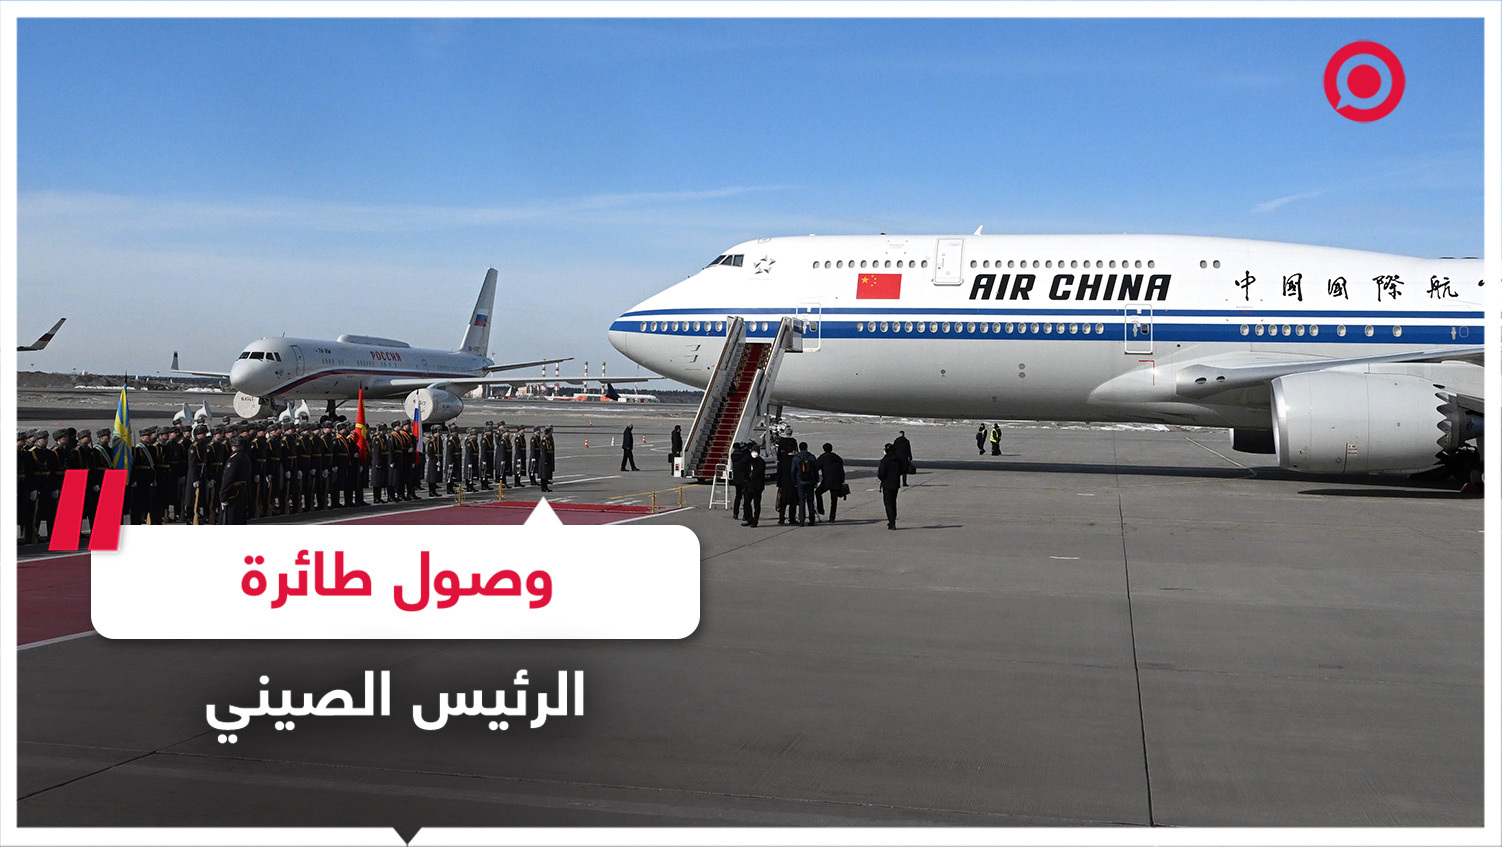 وصول طائرة الرئيس الصيني إلى موسكو